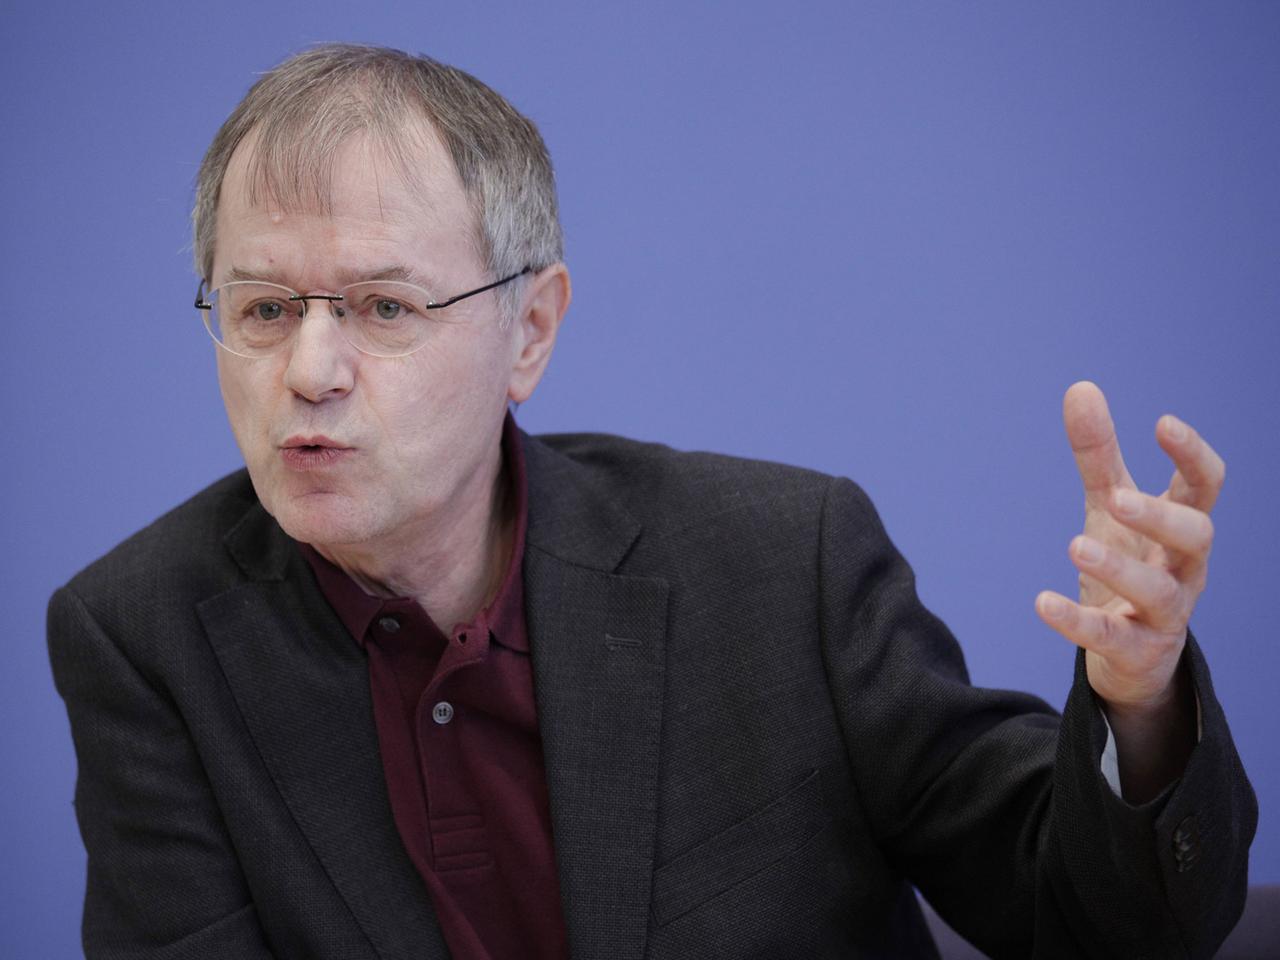 Der Politikwissenschaftler Christoph Butterwegge von der Universität Köln spricht am 13.03.2013 in der Bundespressekonferenz über die Bilanz zu zehn Jahre Agenda 2010.